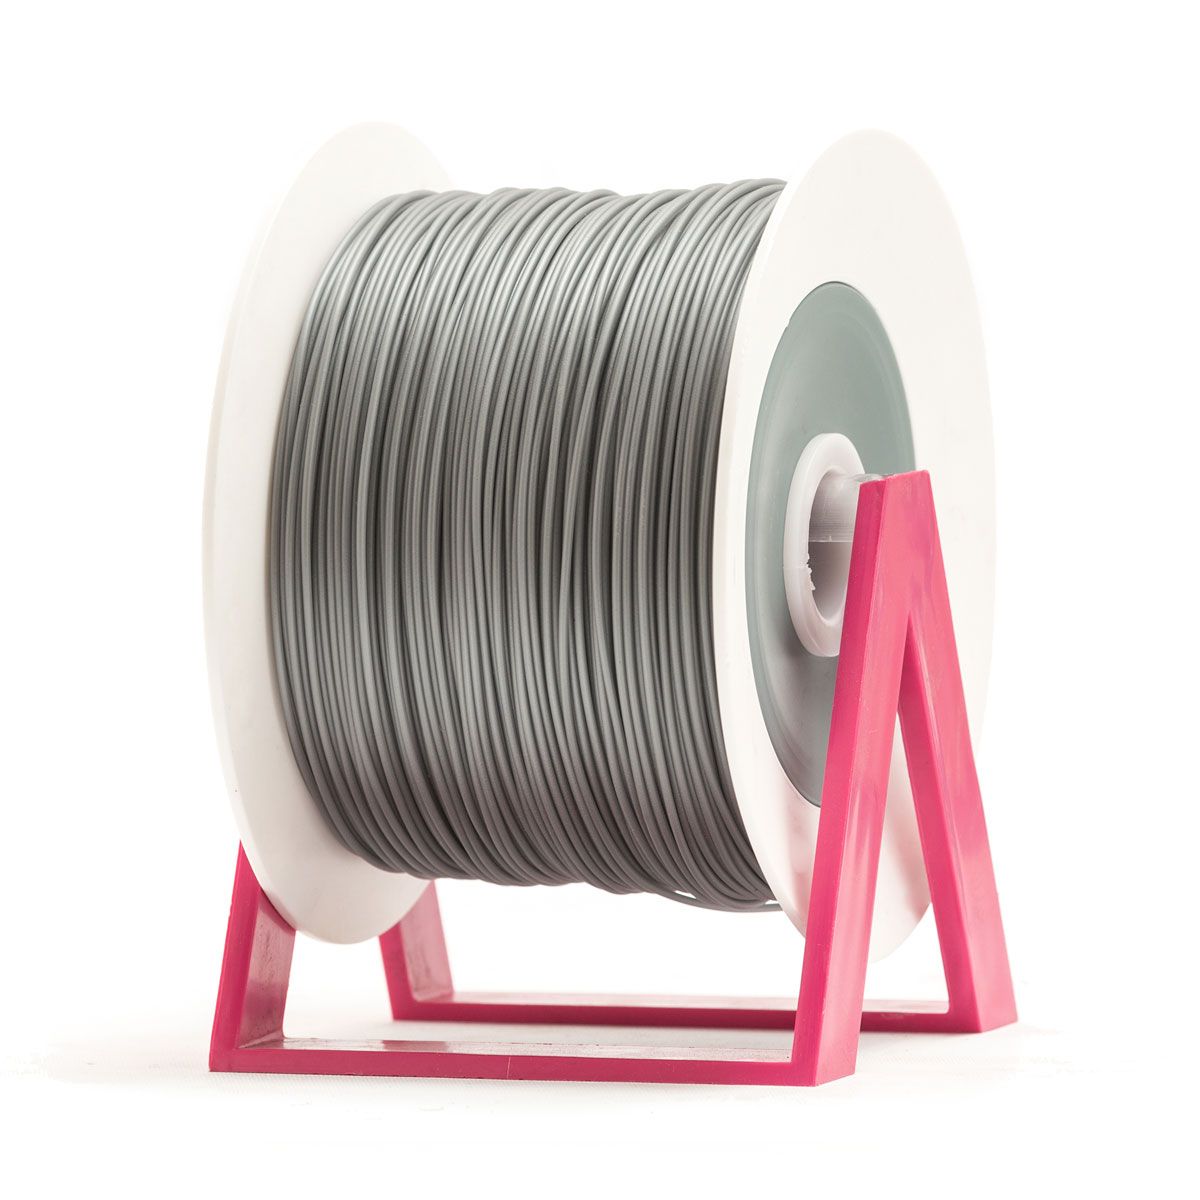 PLA Filament | Color: Silver Gray